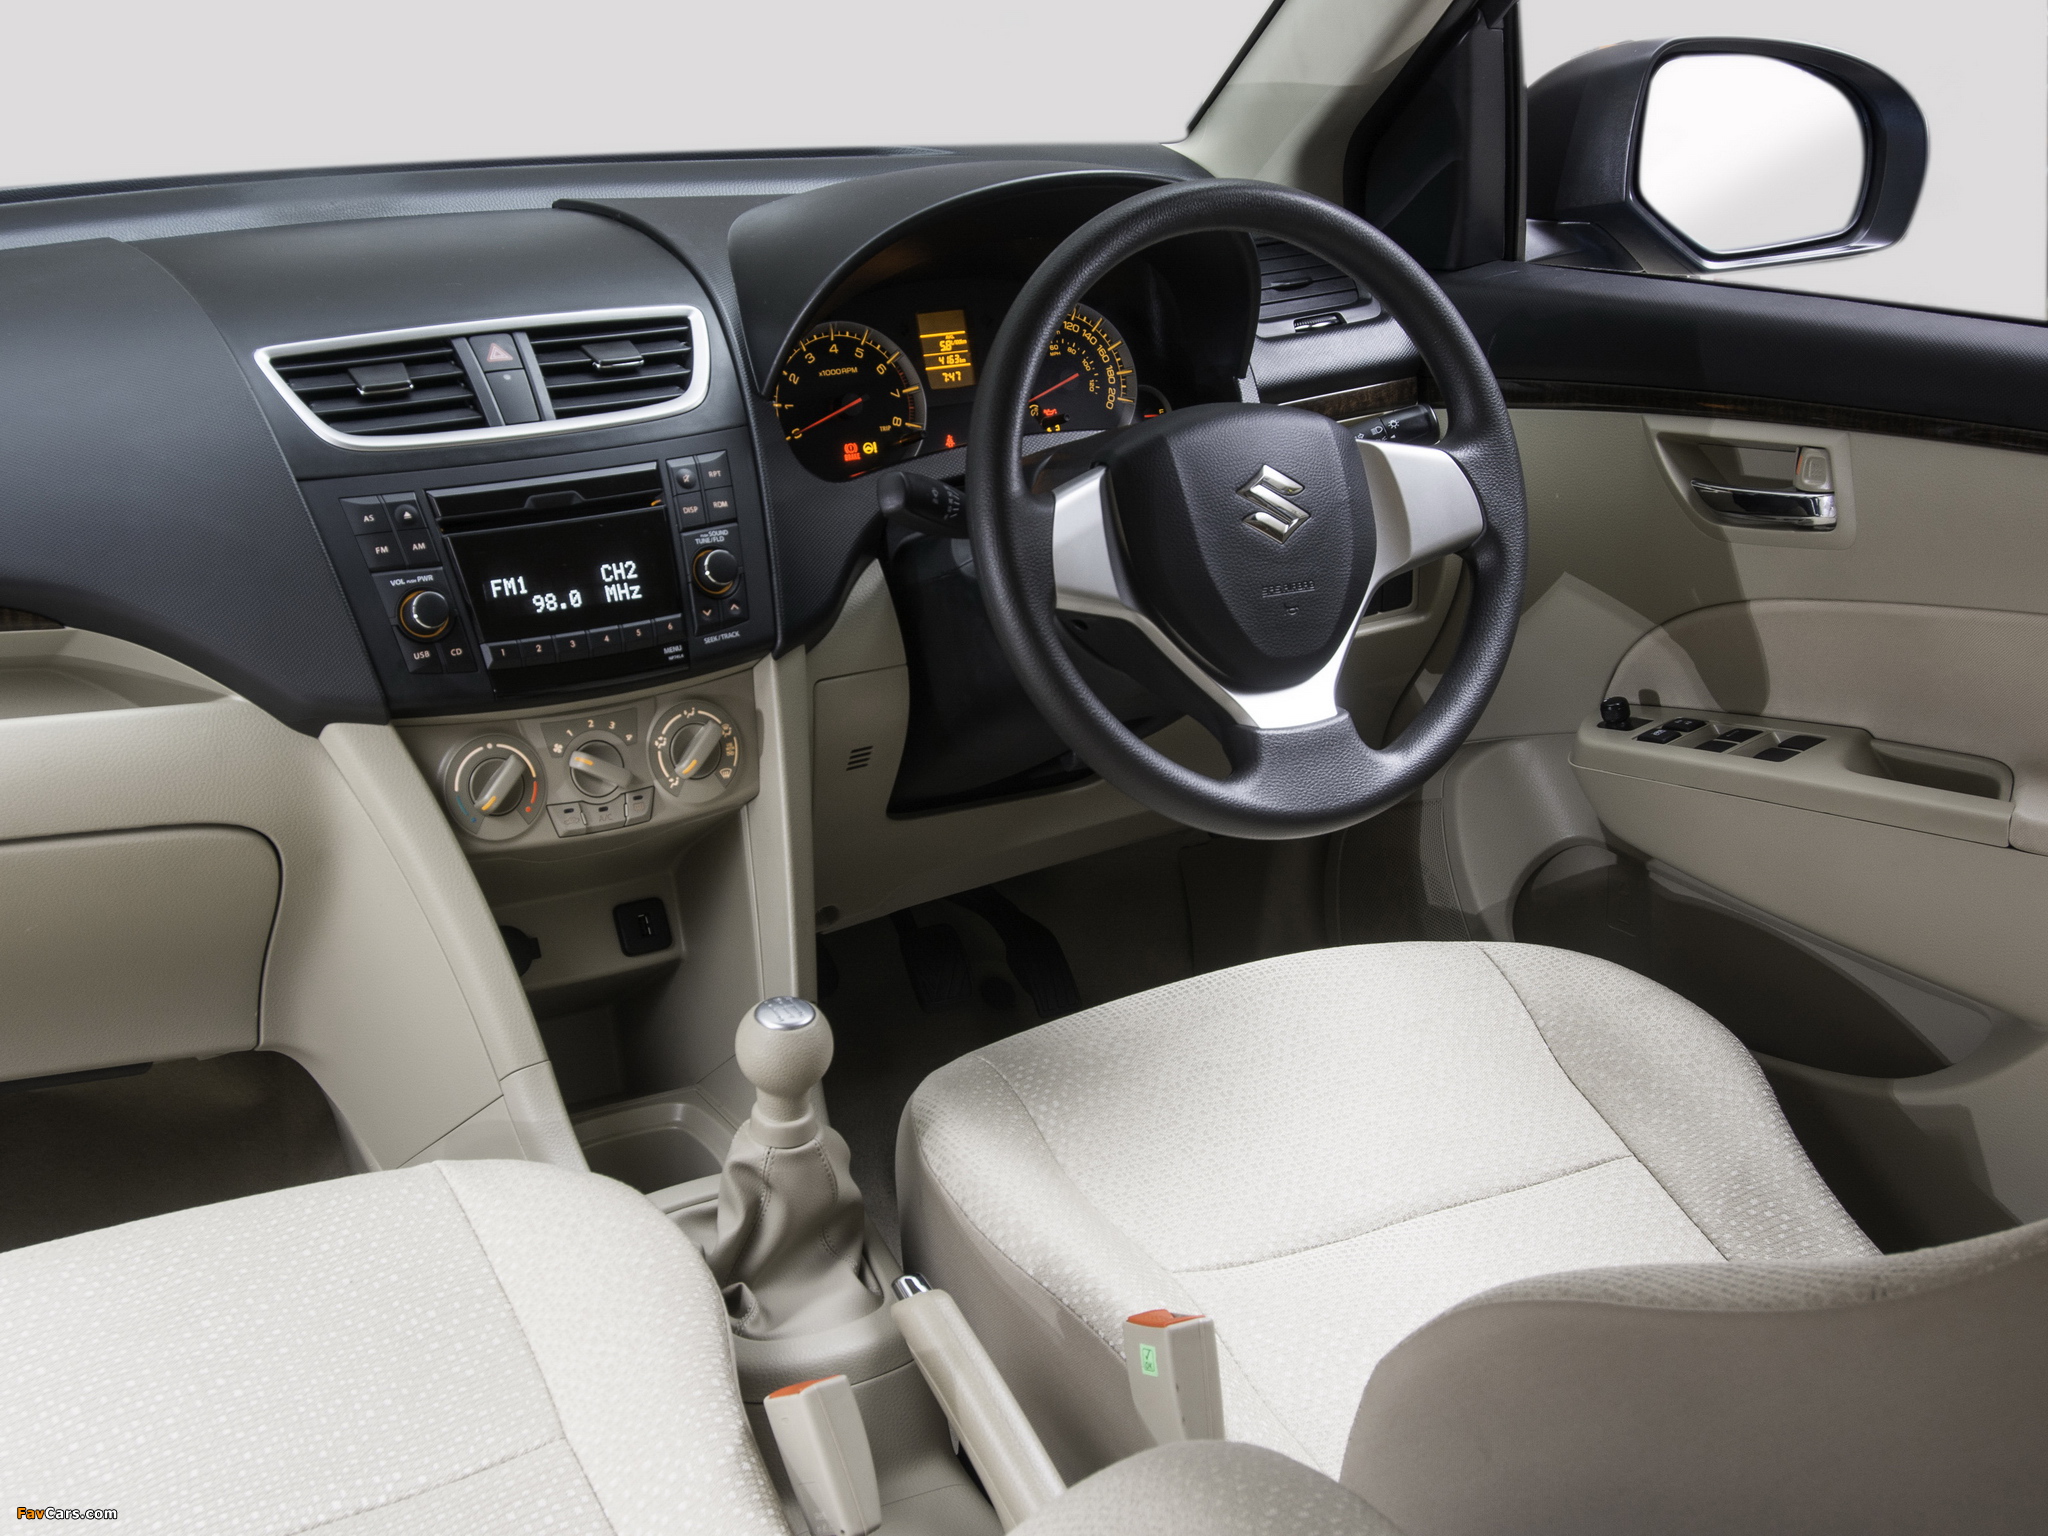 Maruti Suzuki Swift Dzire 2014 Diesel Good Condition - Cars - 1743799811